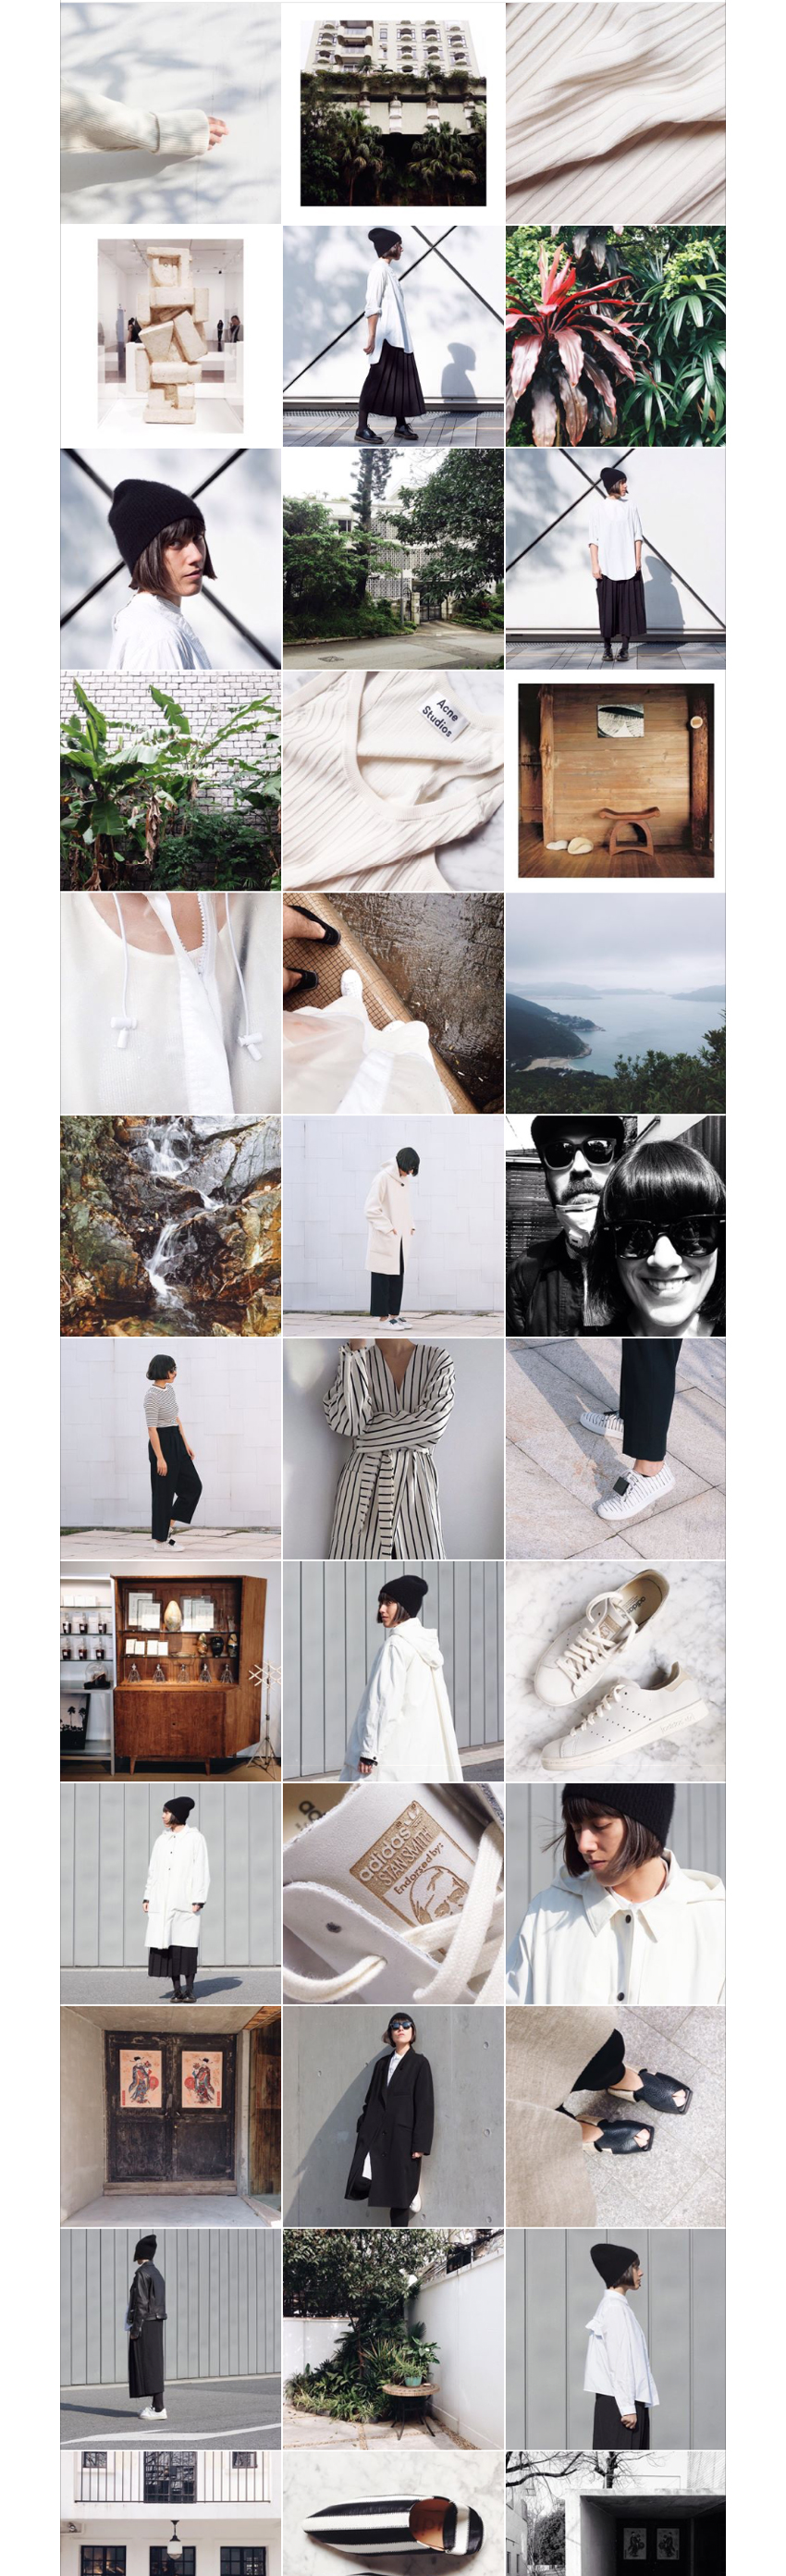 instagram-stylesketchbook